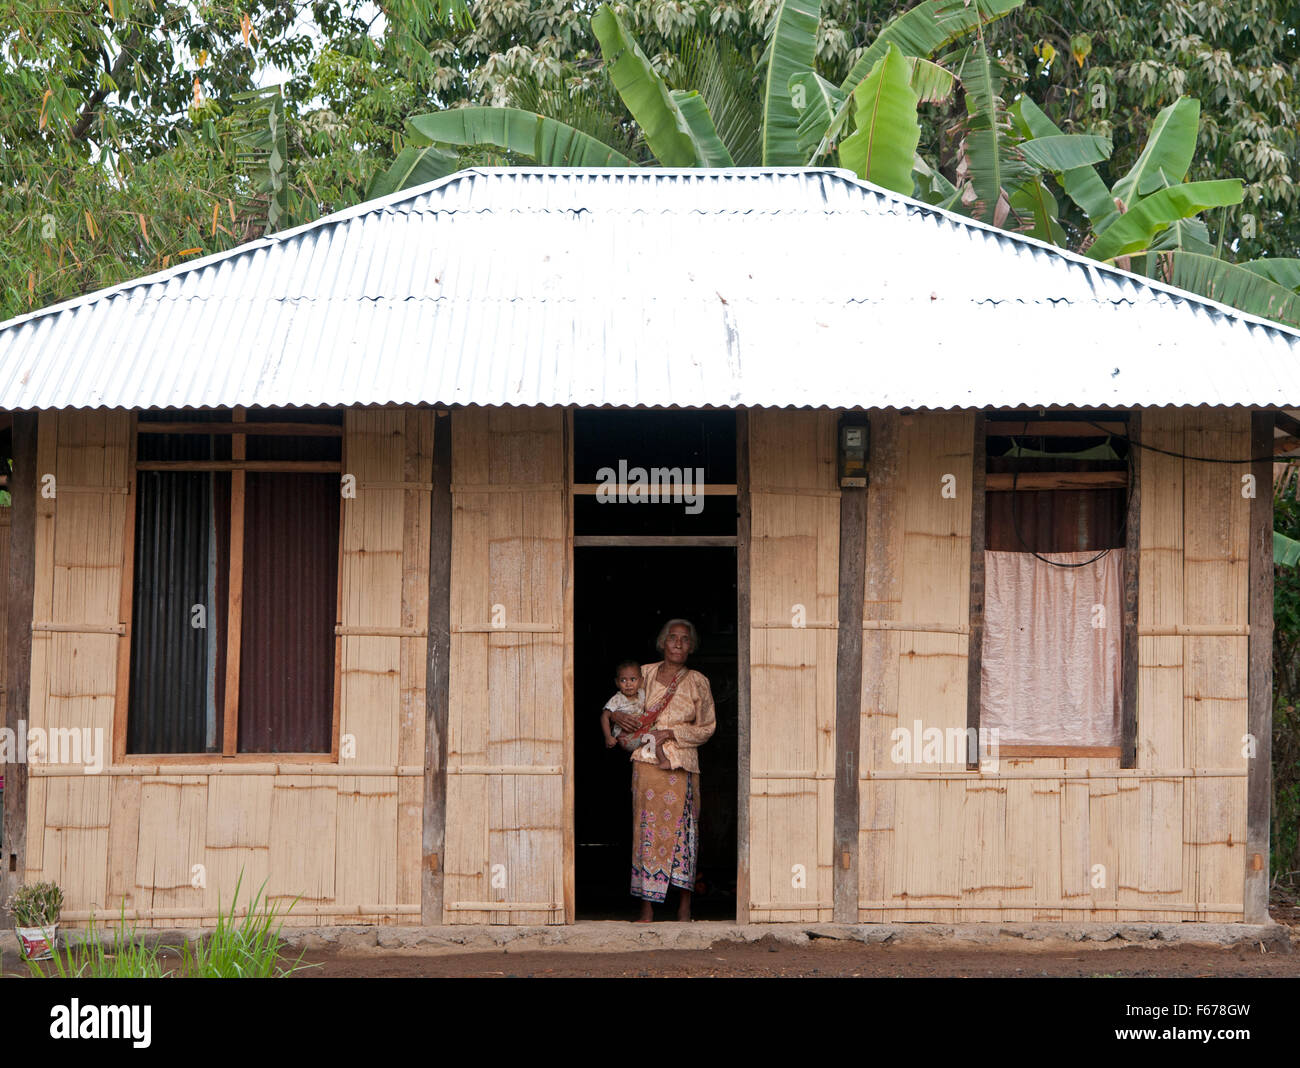 Questa donna è un abitante del Wagomenge villaggio tradizionale. La gente la vita qui senza alcun lusso. Foto Stock